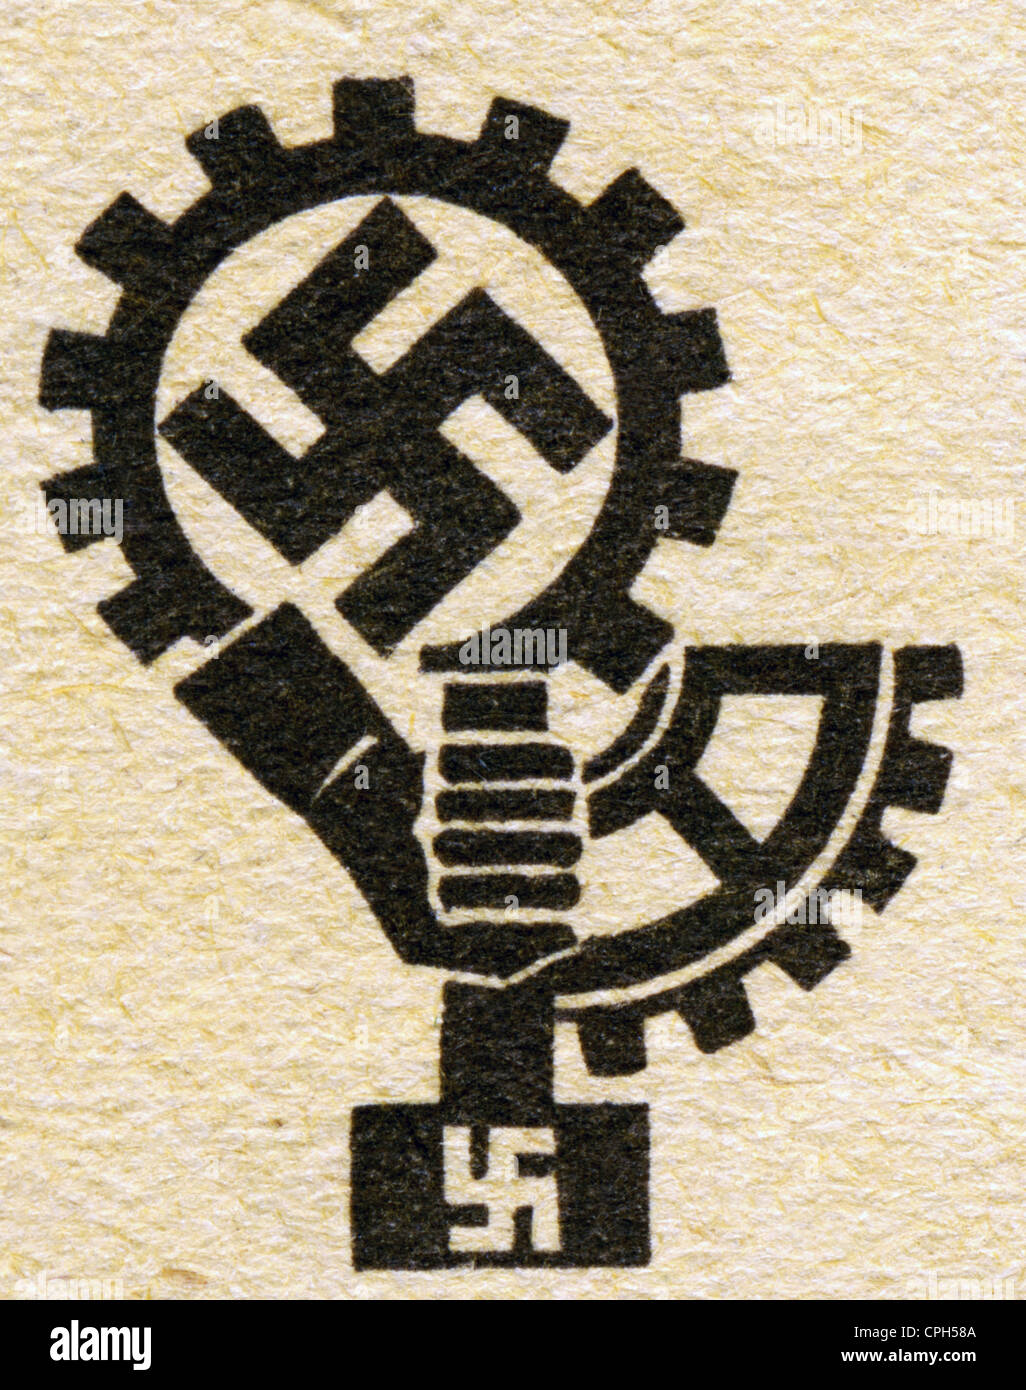 National-socialisme / nazisme, 1933 - 1945, droits additionnels-Clearences-non disponible Banque D'Images